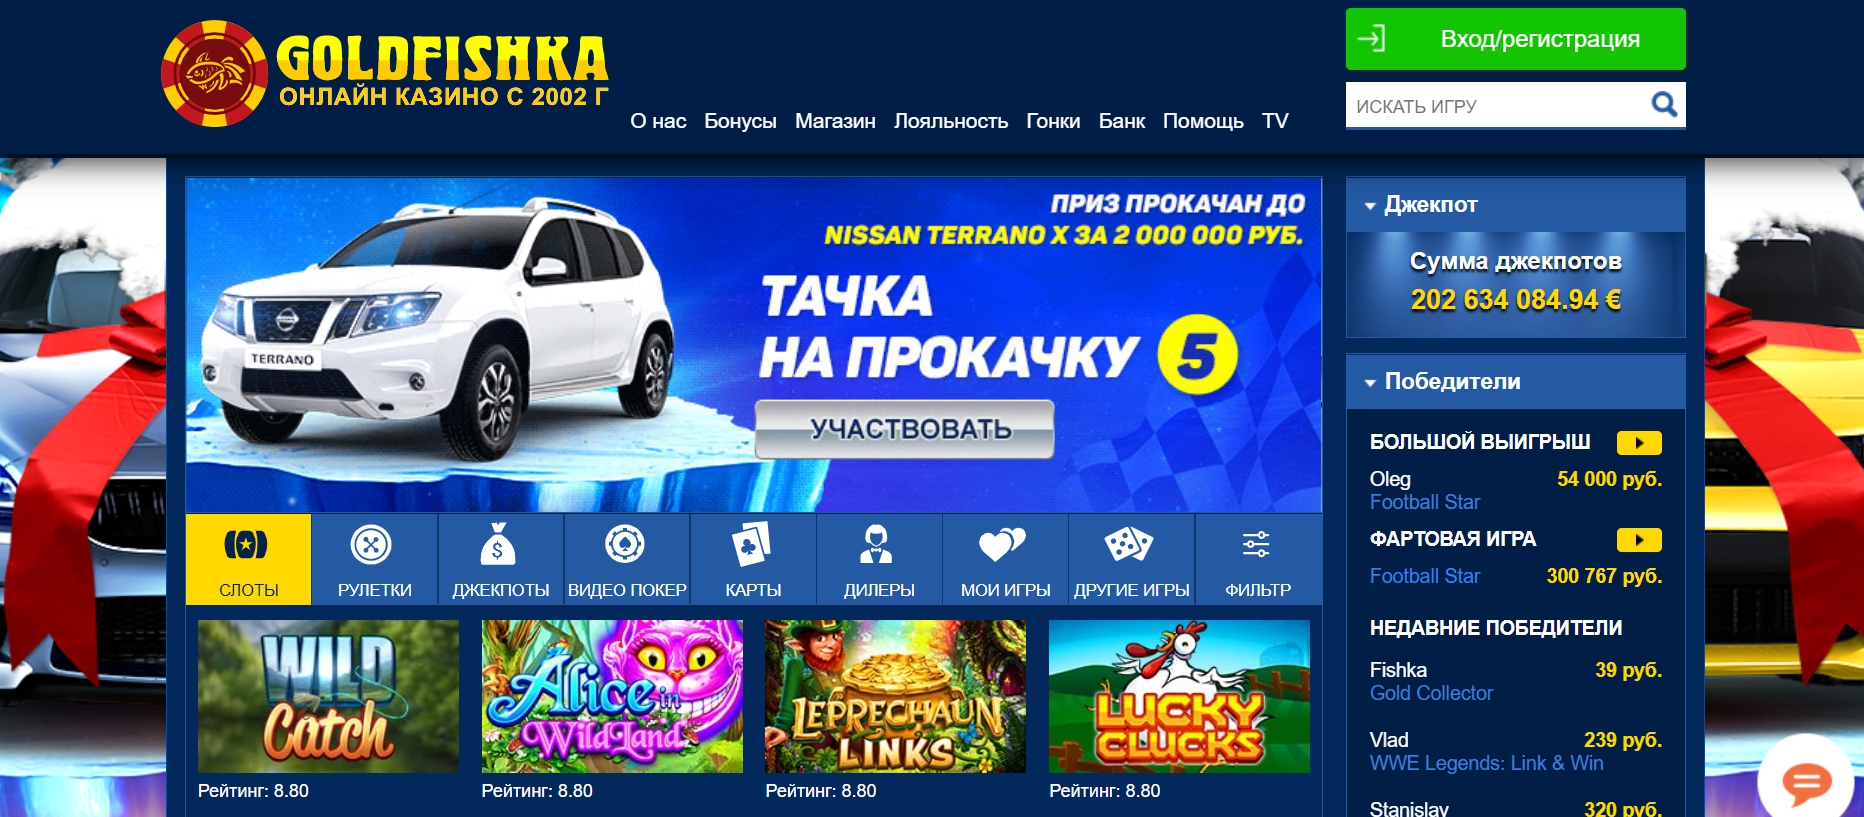 Goldfishka - Outstall Online Casino